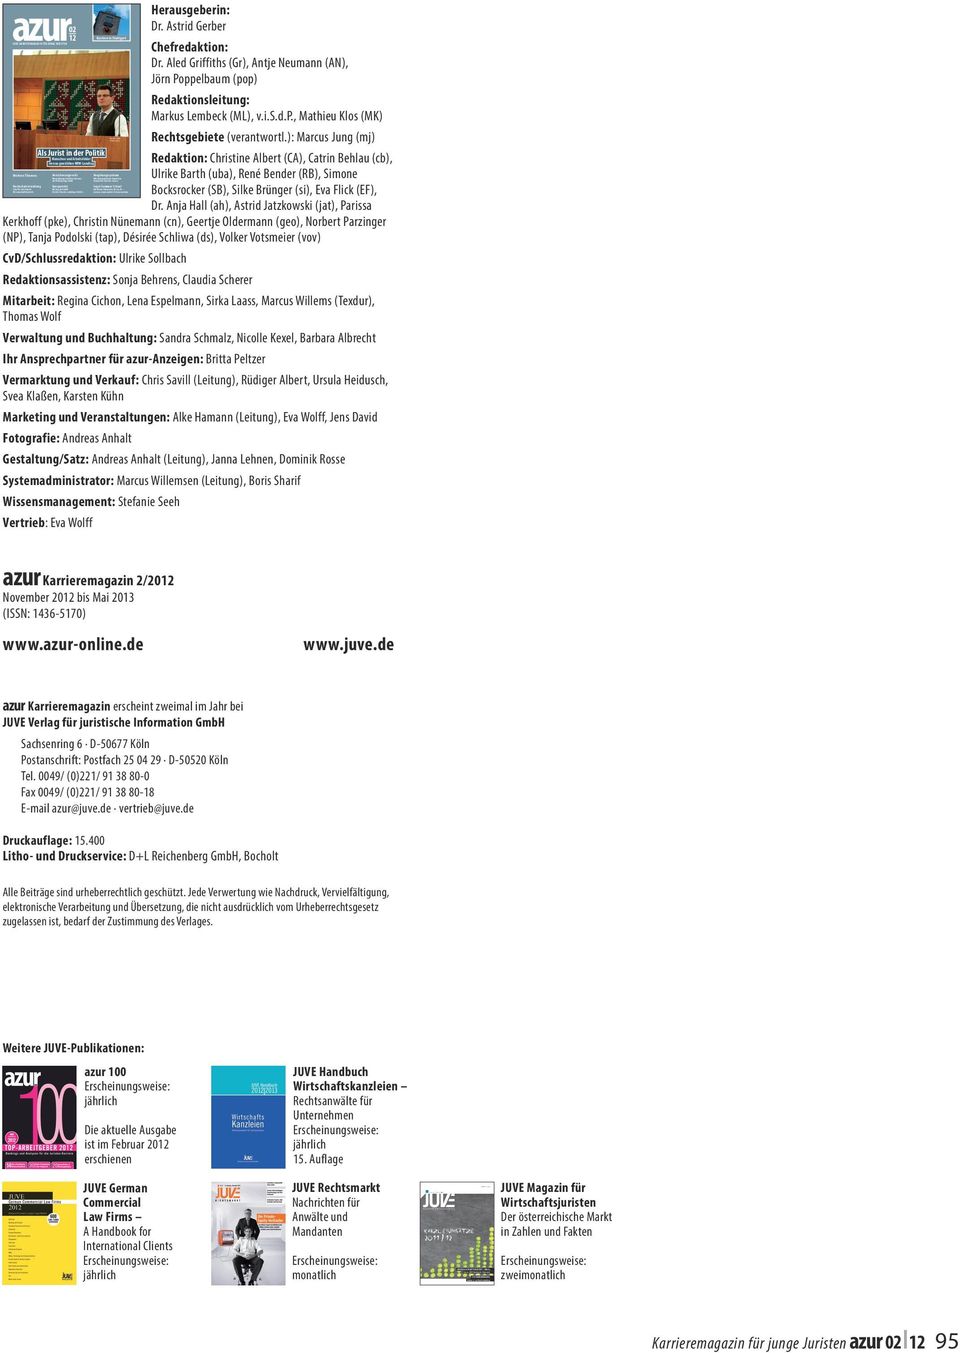 at Gesellschaftsrecht / M&a: Erstes JUVE Ranking für Österreich UnternehMen: Karriere in der Rechtsabteilung azur02 12 JUVE KarriErEmagazin für JUngE JUristEn Weitere themen Hochschulverwaltung Jobs